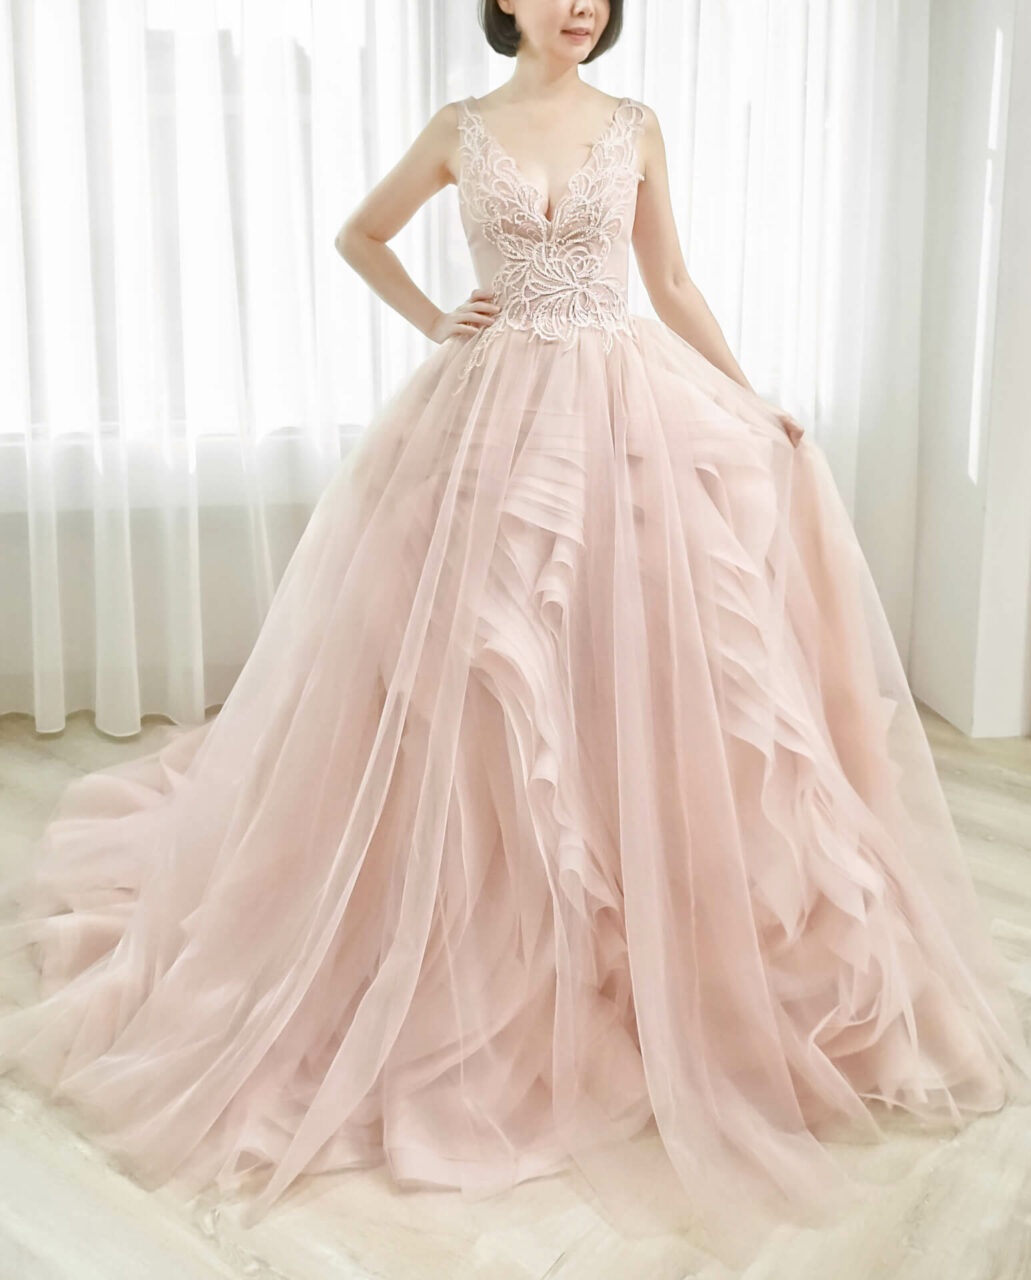 甜美裸粉玫瑰層次禮服 | 愛情蔓延精緻婚紗 - 禮服出租 | 婚紗推薦 | 台中婚紗